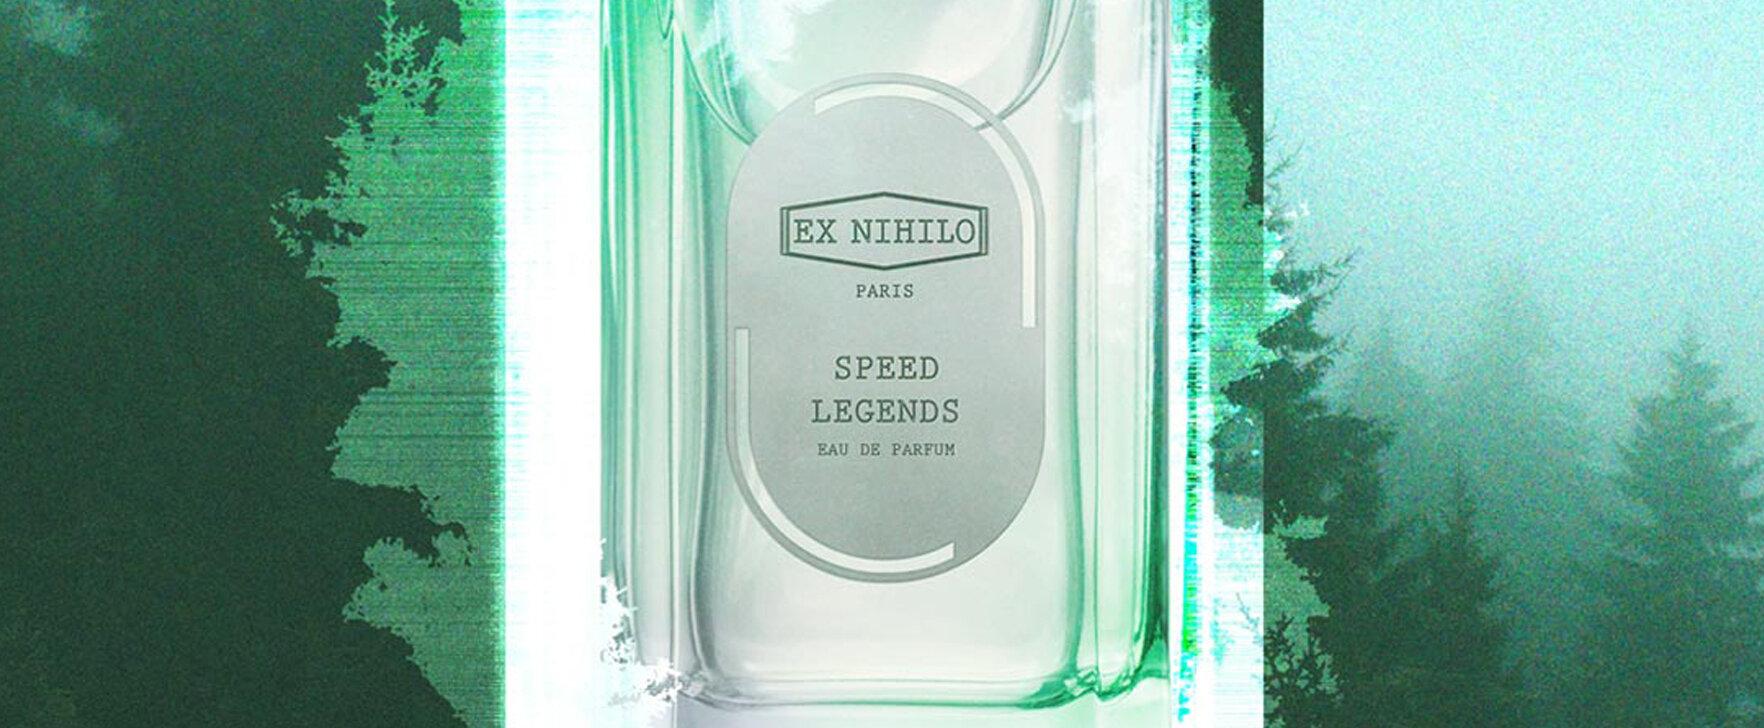 „Speed Legend“ - Ex Nihilo verbindet Geschichte und Modernität